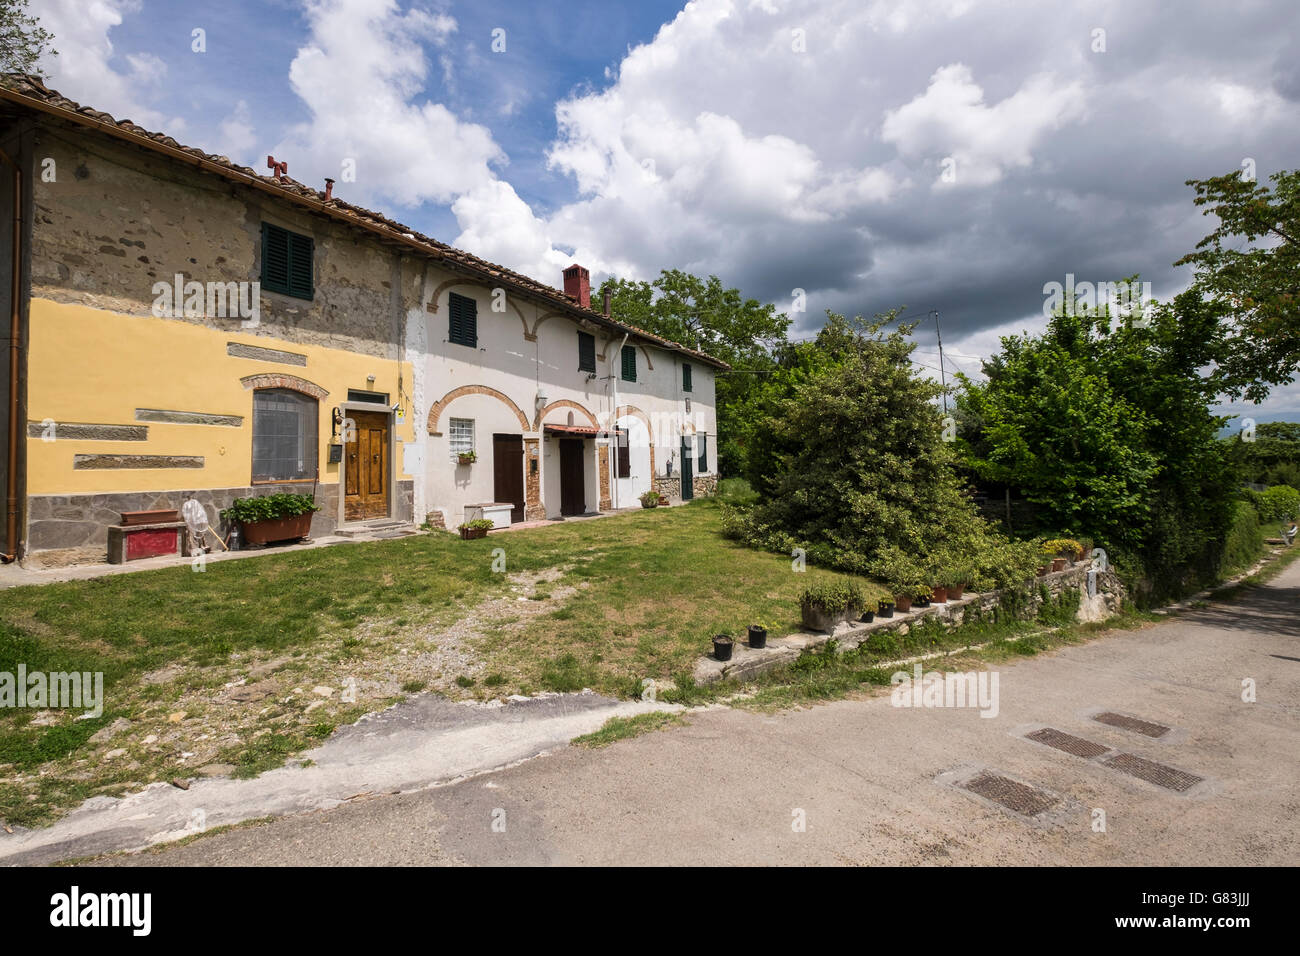 Row of renovated old houses on the Via Lumena near Sant Agata, Tuscany, Italy Stock Photo